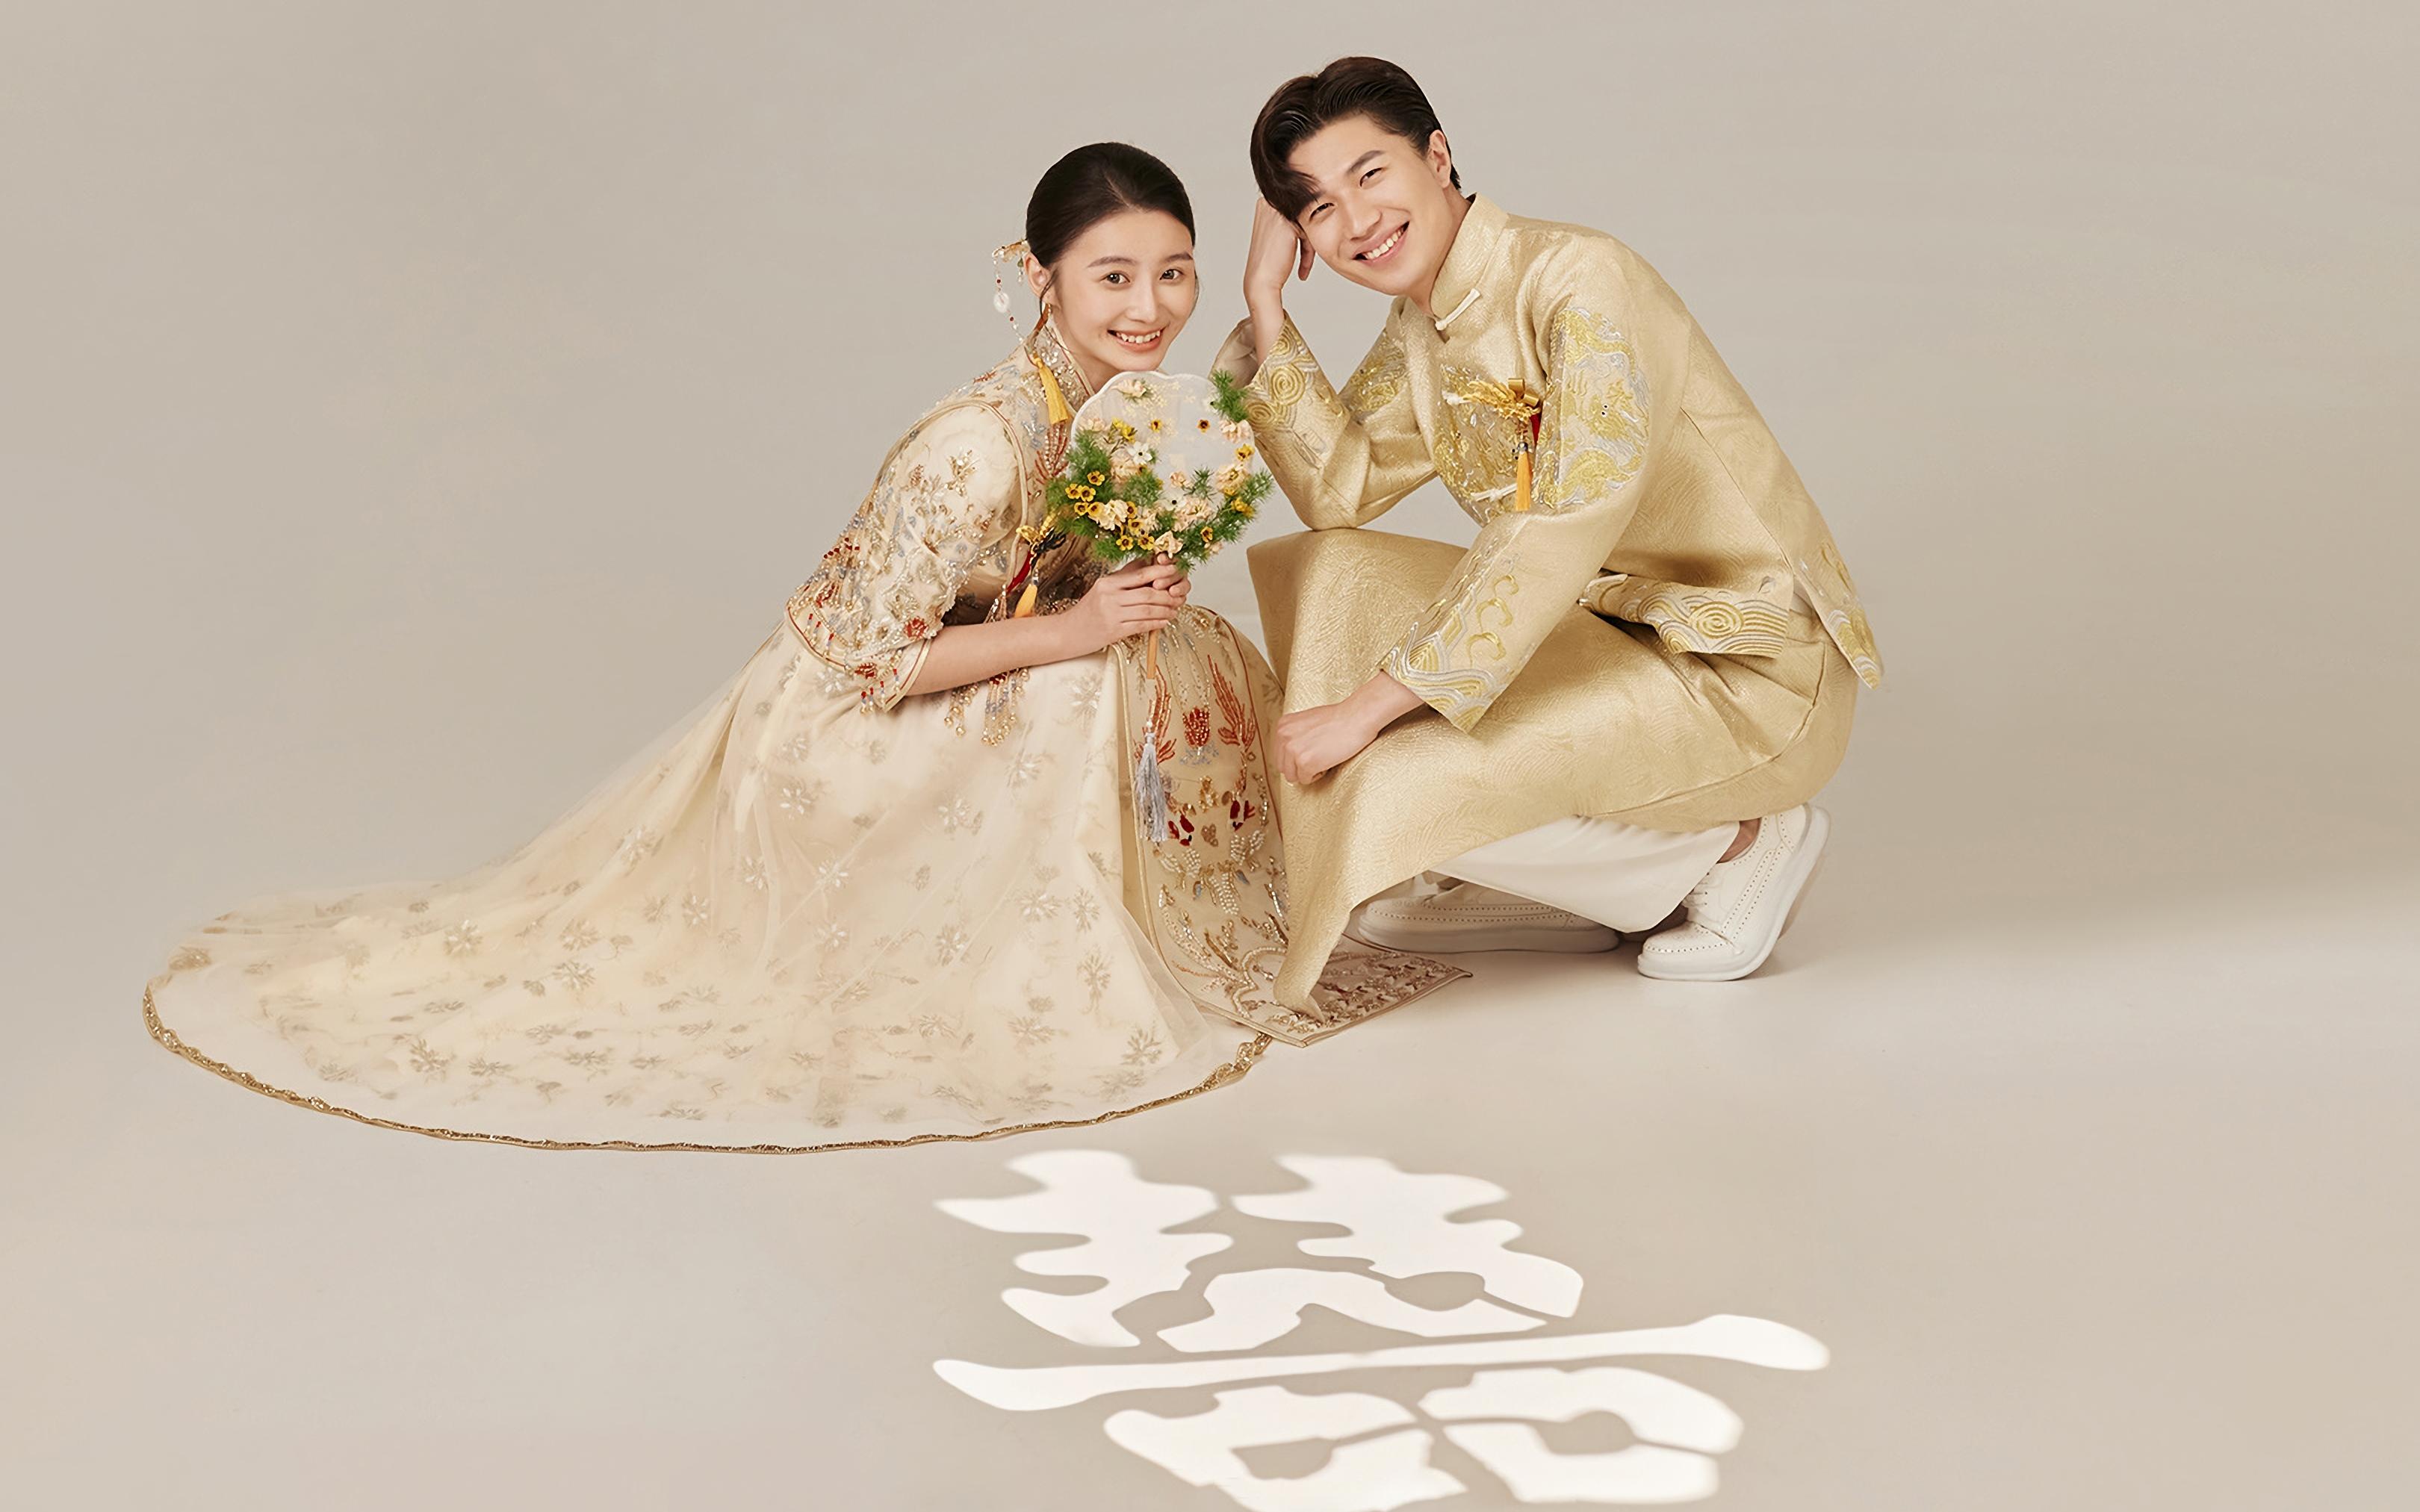 中式喜嫁婚纱照结合光影真是太甜啦！父母都说好看！